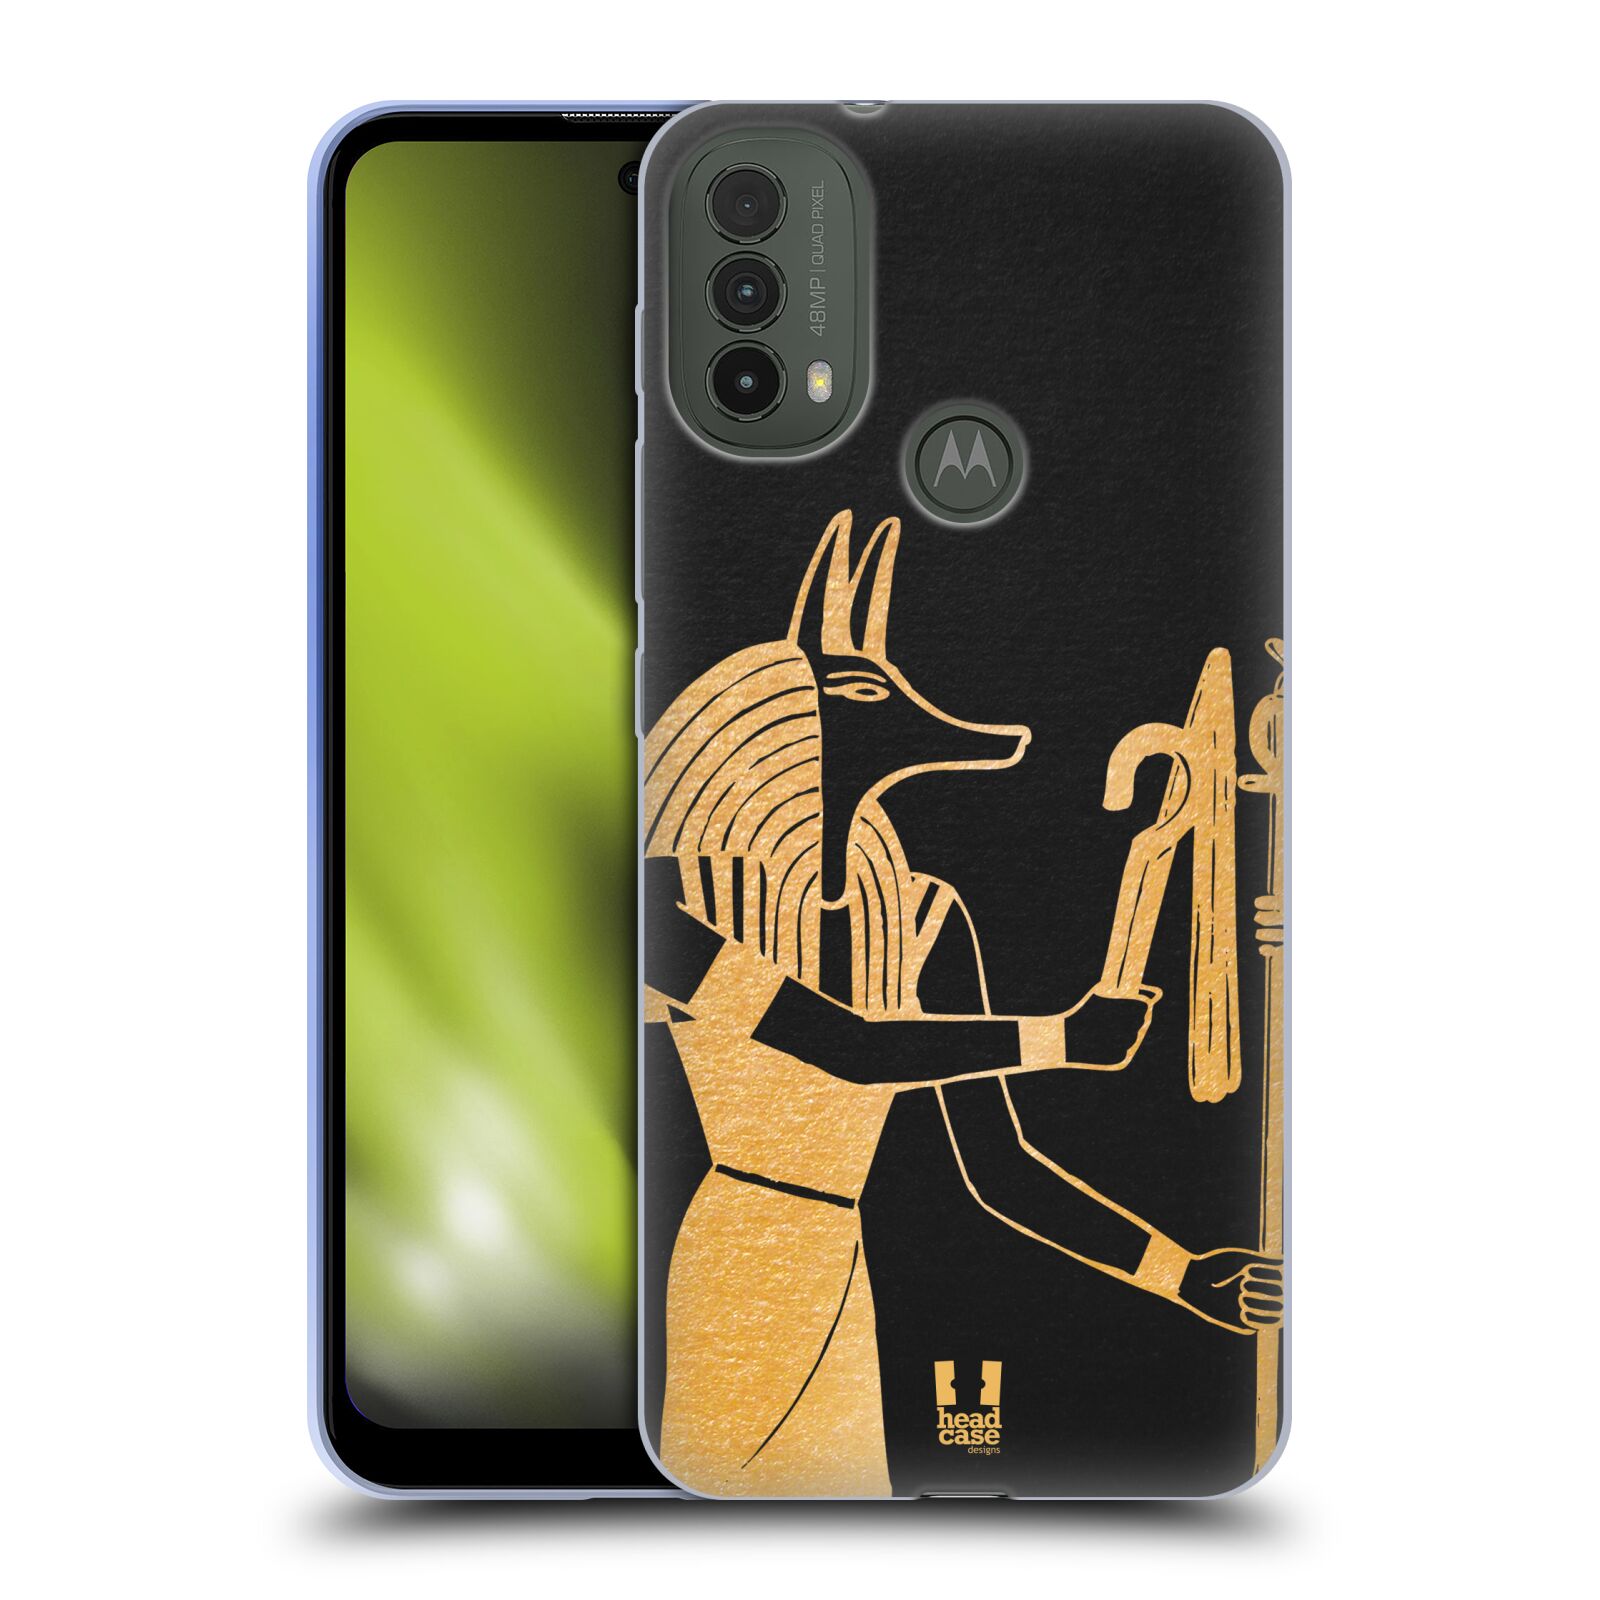 Silikonové pouzdro na mobil Motorola Moto E40 - Head Case - EGYPT ANUBIS